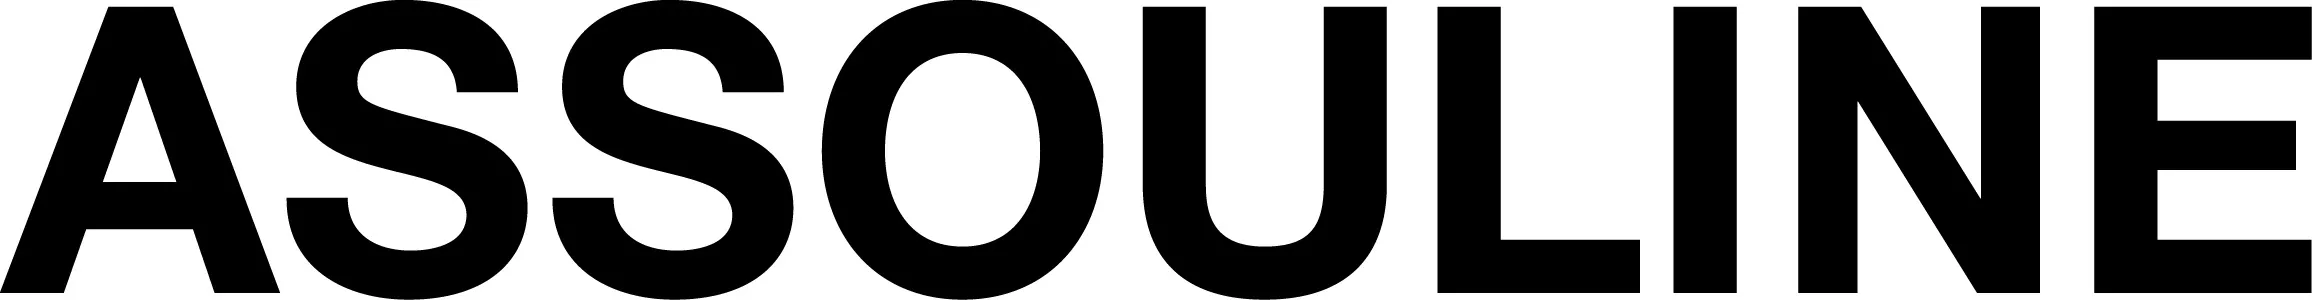 Assouline logo & Ohana & co